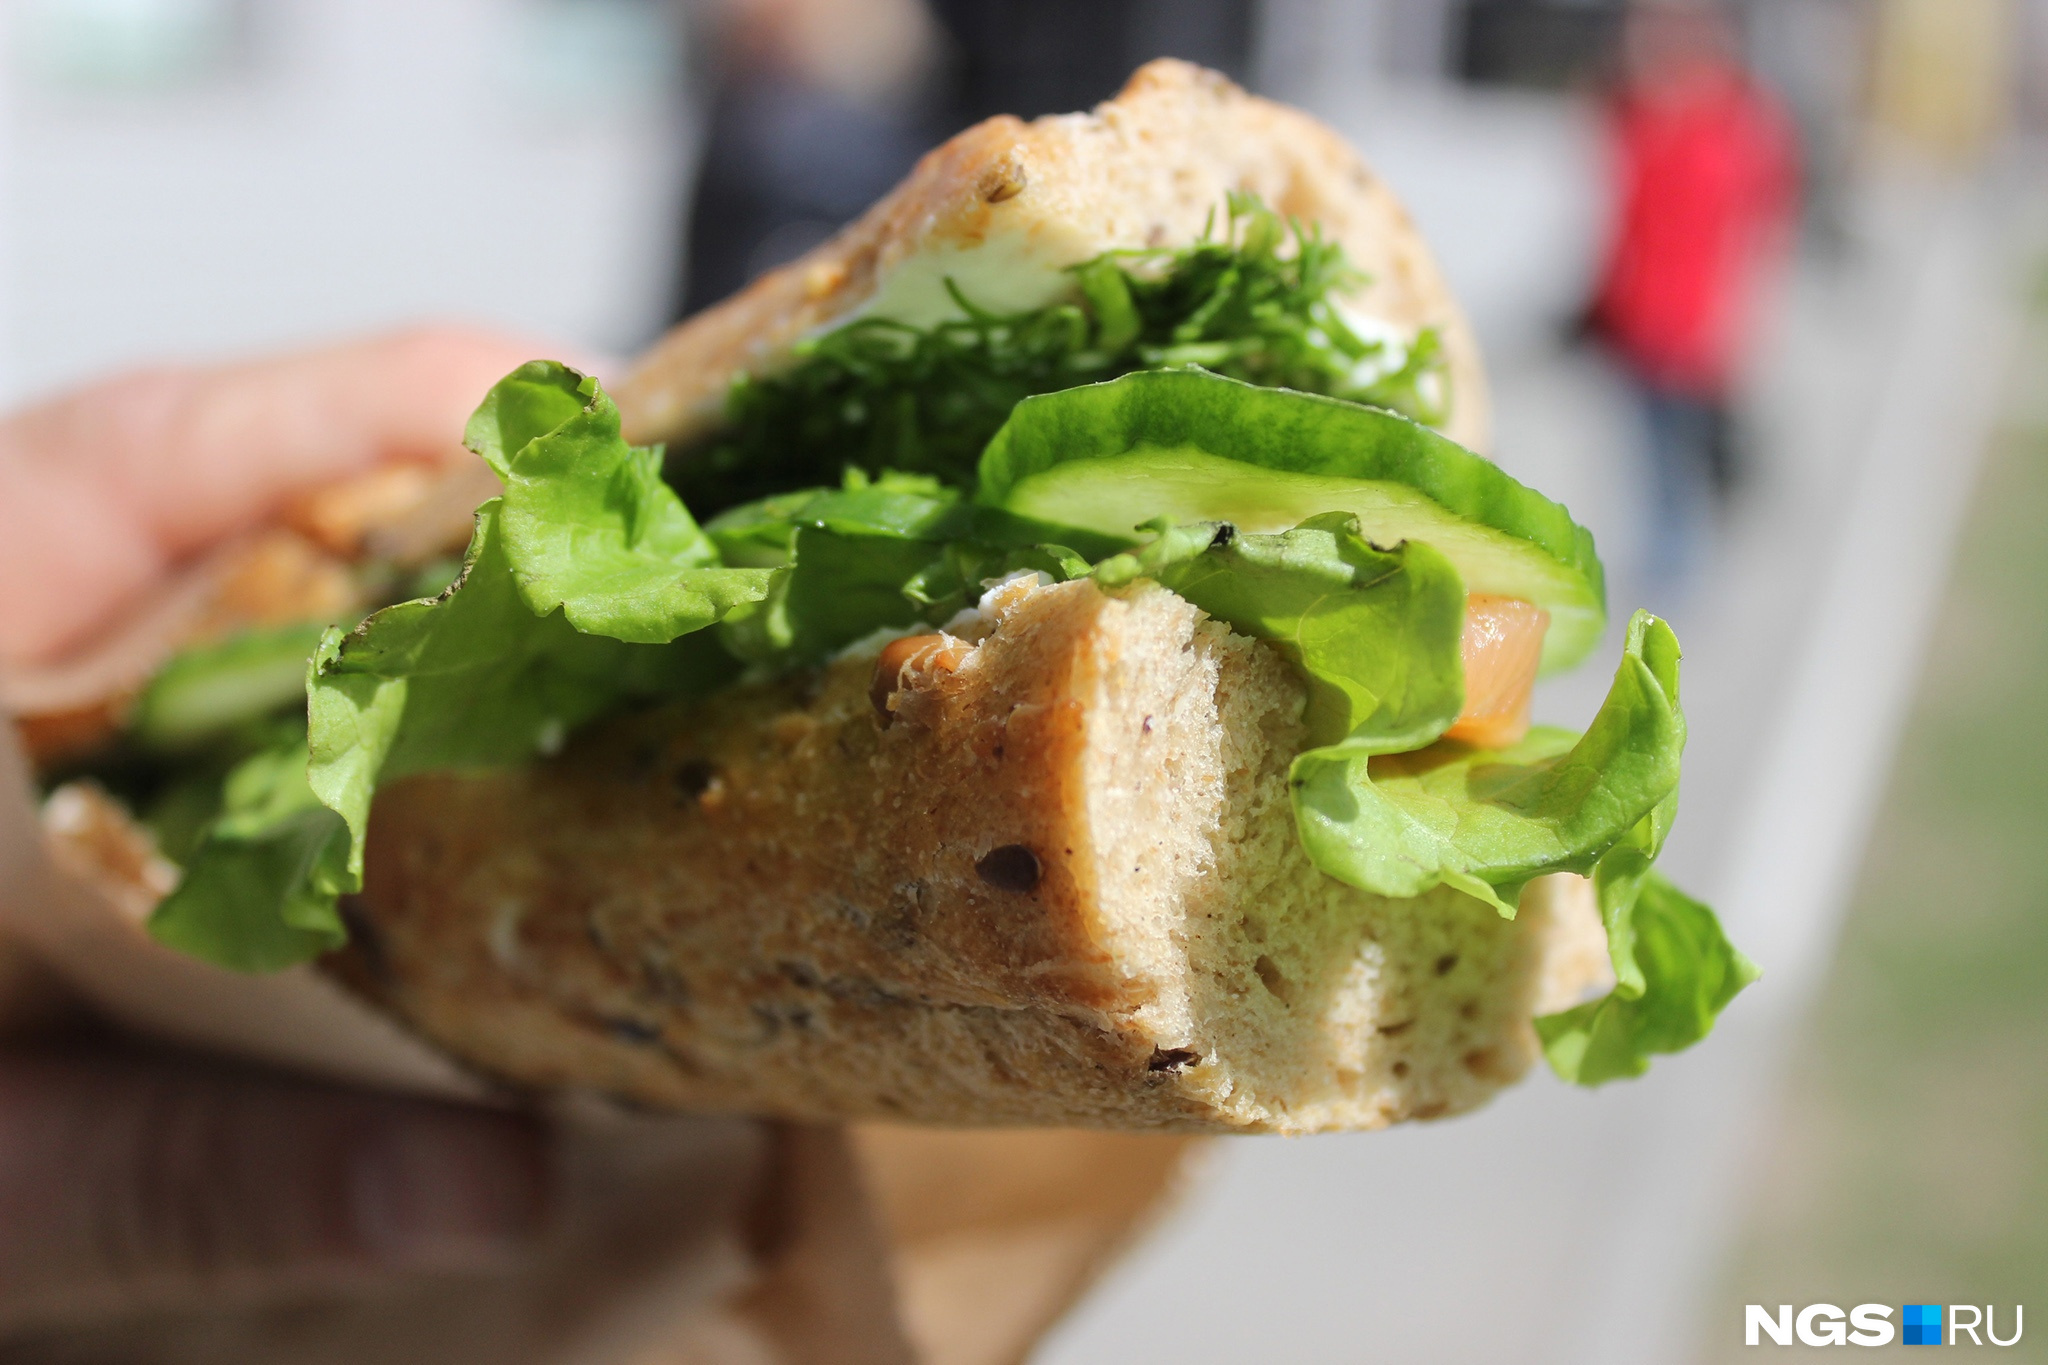 В качестве основы для сэндвичей врачи рекомендуют брать зерновой хлеб и добавлять к нему овощи и зелень, отварное мясо, ветчину, паштеты домашнего приготовления, сливочный сыр